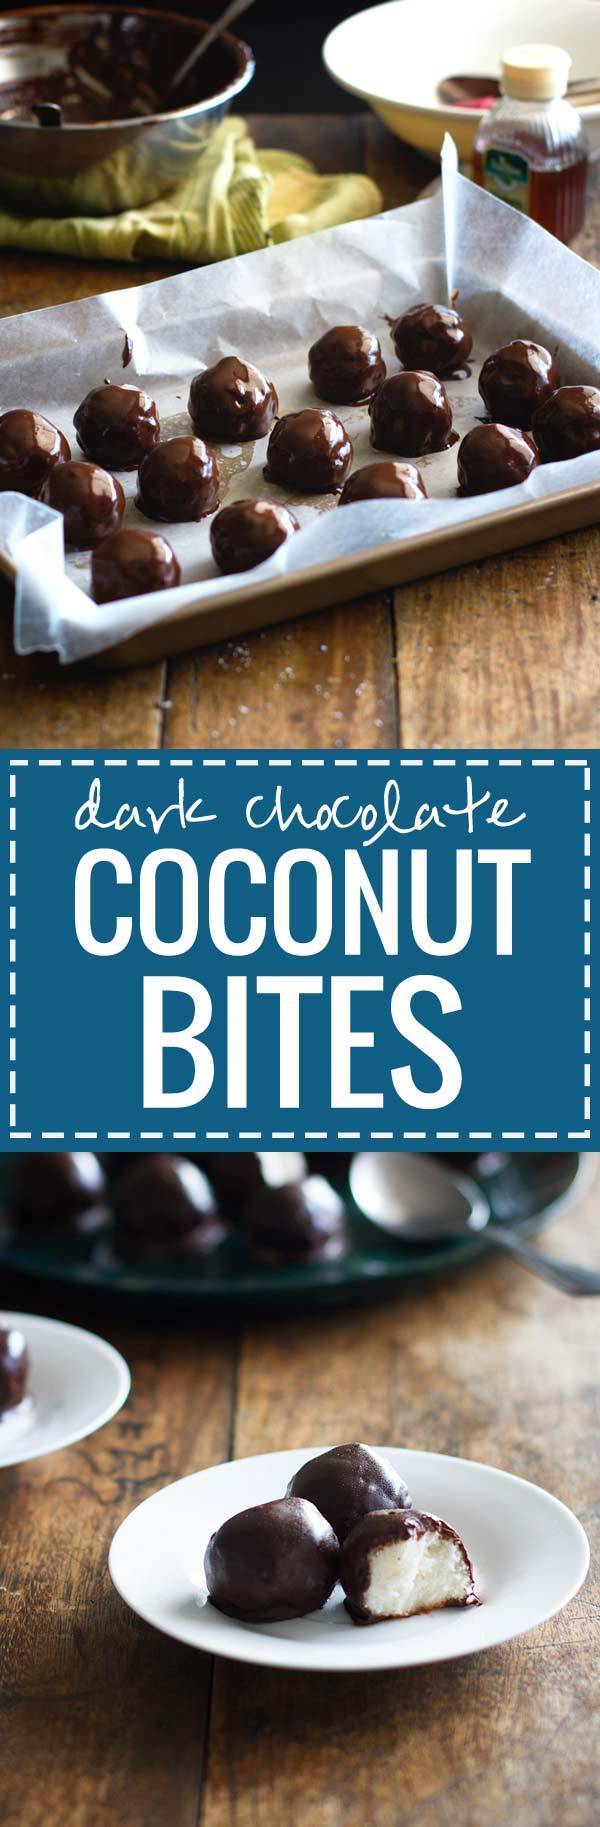 Dark Chocolate Coconut Bites - Gigitan kelapa cokelat hitam ini terlihat seperti truffle lucu dan hanya membutuhkan empat bahan. 130 kalori rasa manis alami.